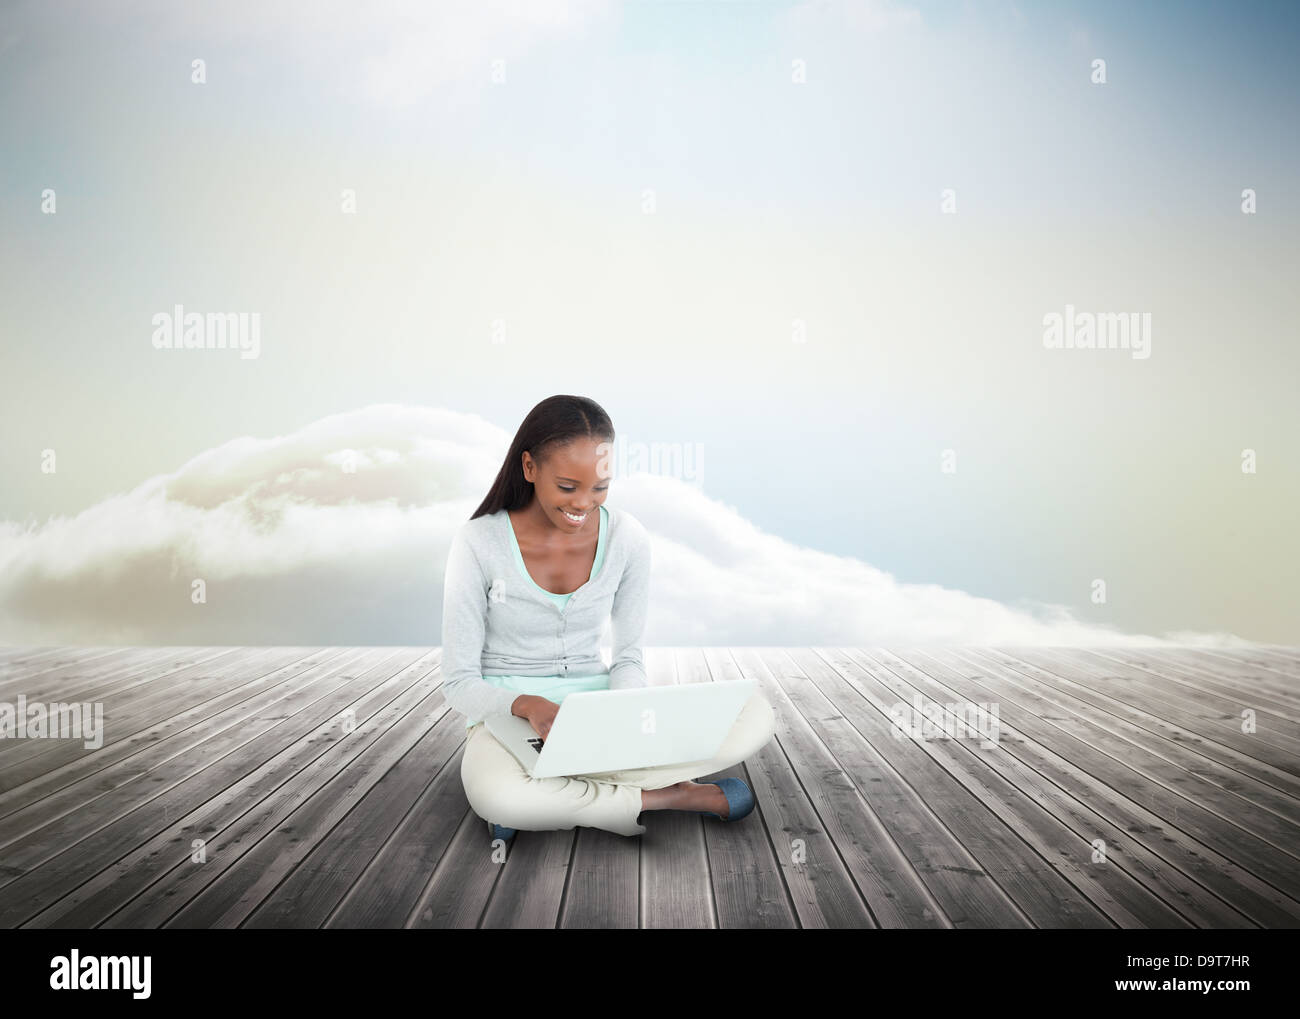 Cute woman using laptop sur des planches en bois menant à l'horizon Banque D'Images